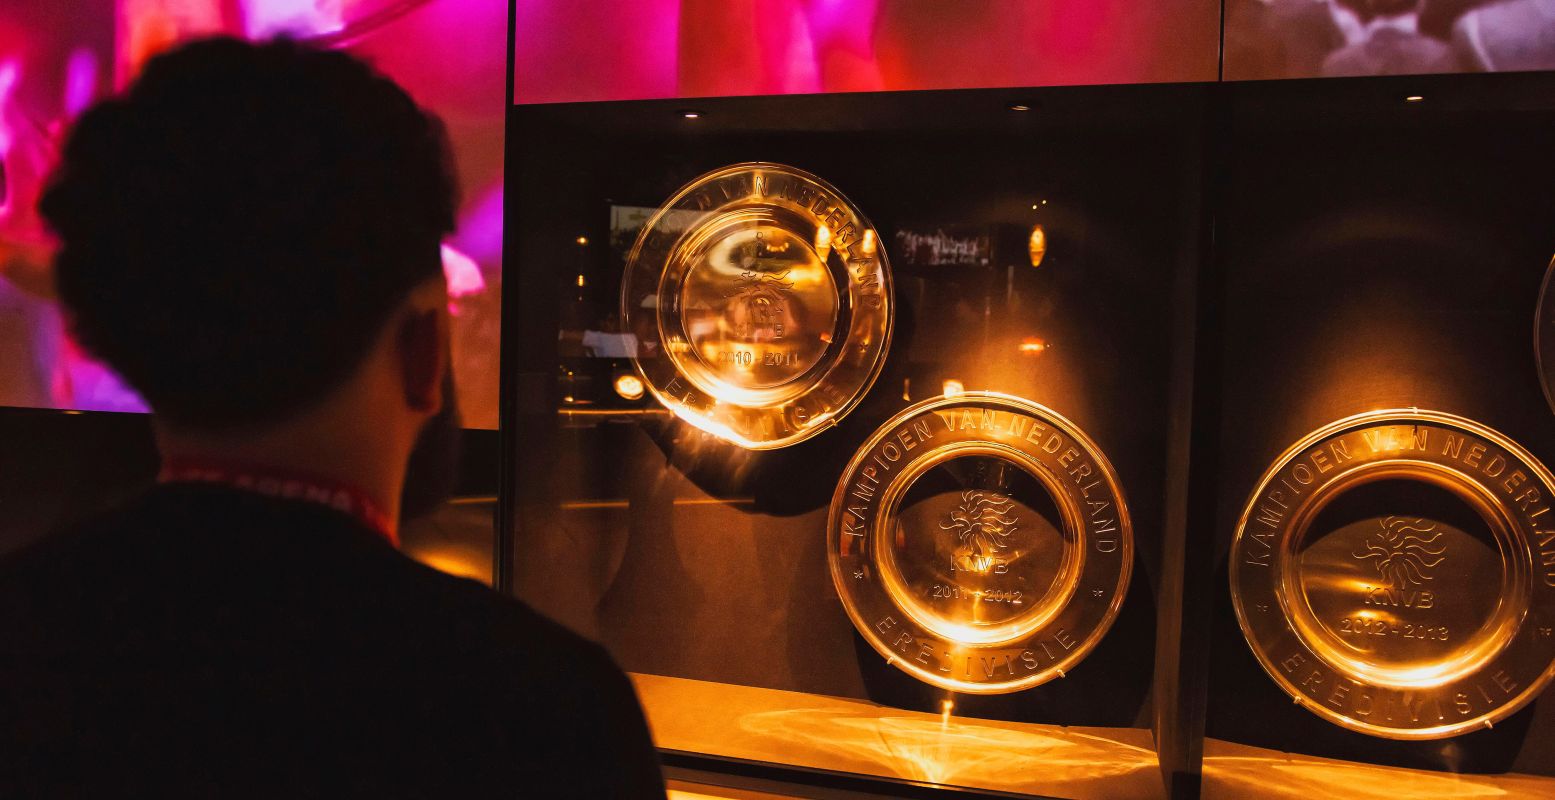 Bekijk de vele prijzen uit de clubhistorie van Ajax in de Johan Cruijff ArenA. Foto: Johan Cruijff ArenA